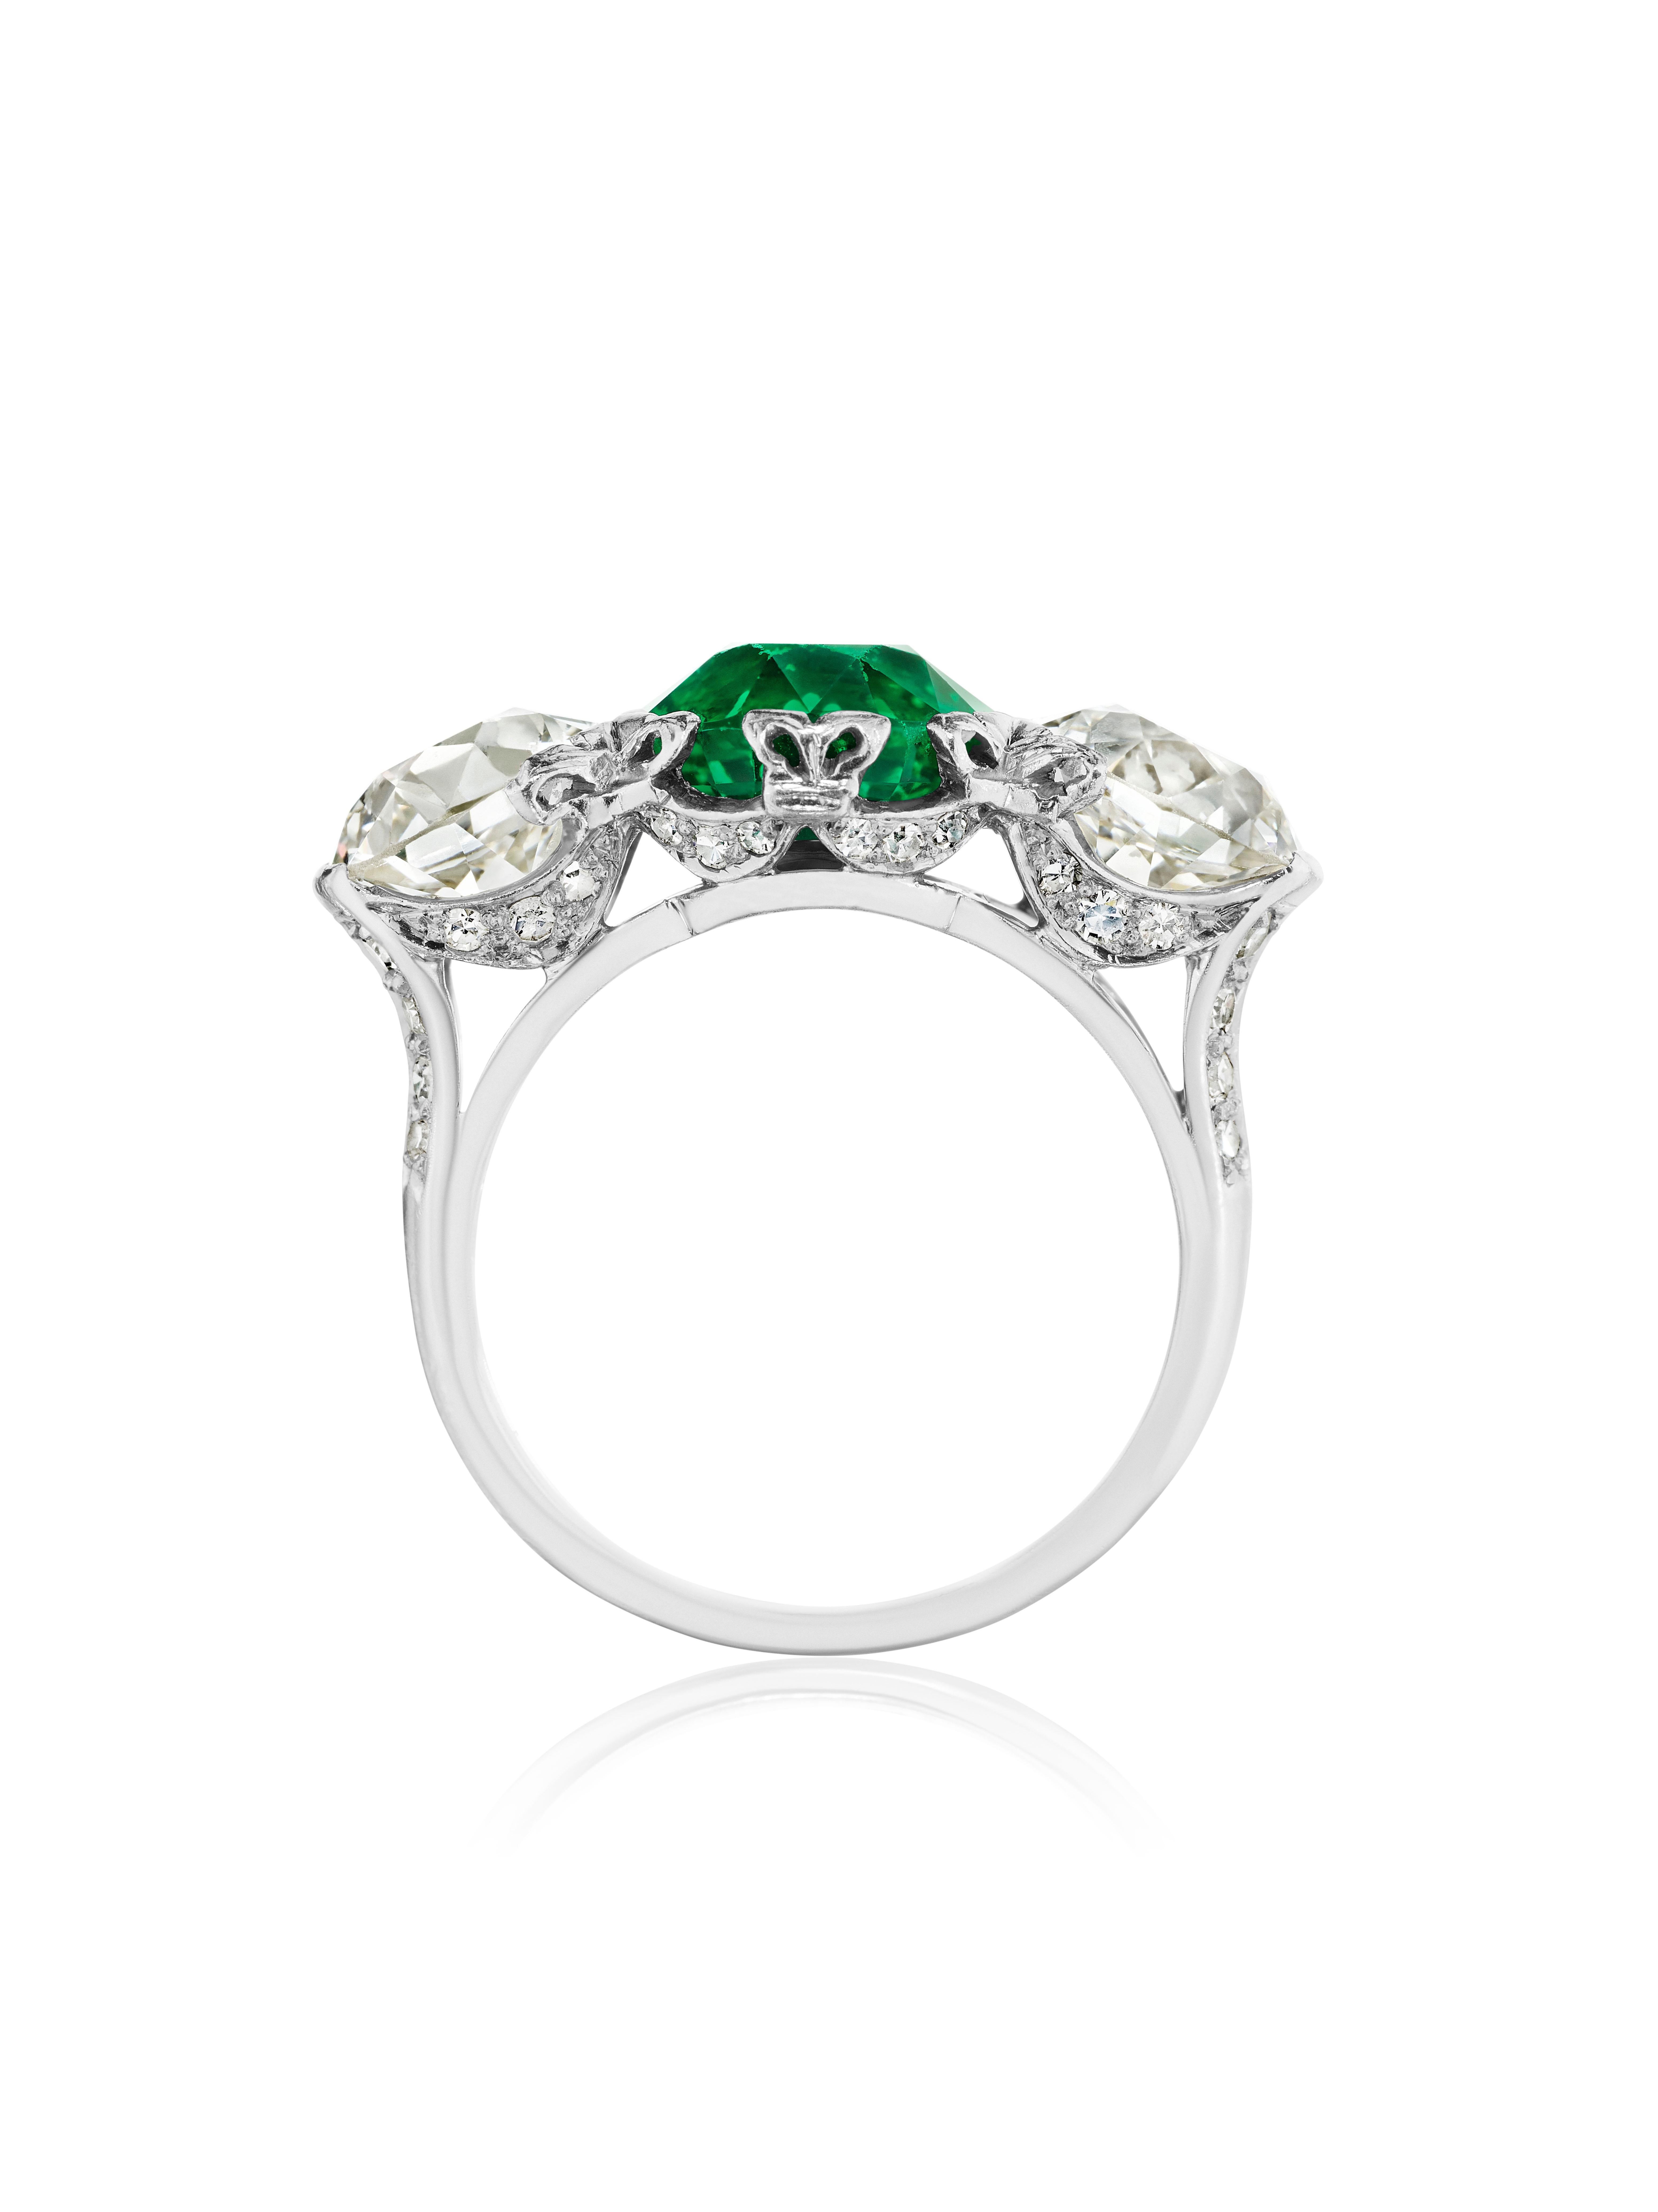 Ultra Rare Gubelin und GIA zertifiziert natürlichen Smaragd und Diamant-Ring.  3,38 Karat Smaragd im Brillantschliff, kolumbianischer Herkunft.  Zwei runde Diamanten im alten europäischen Schliff an den Seiten, 4,14 Karat (Gesamtgewicht). 